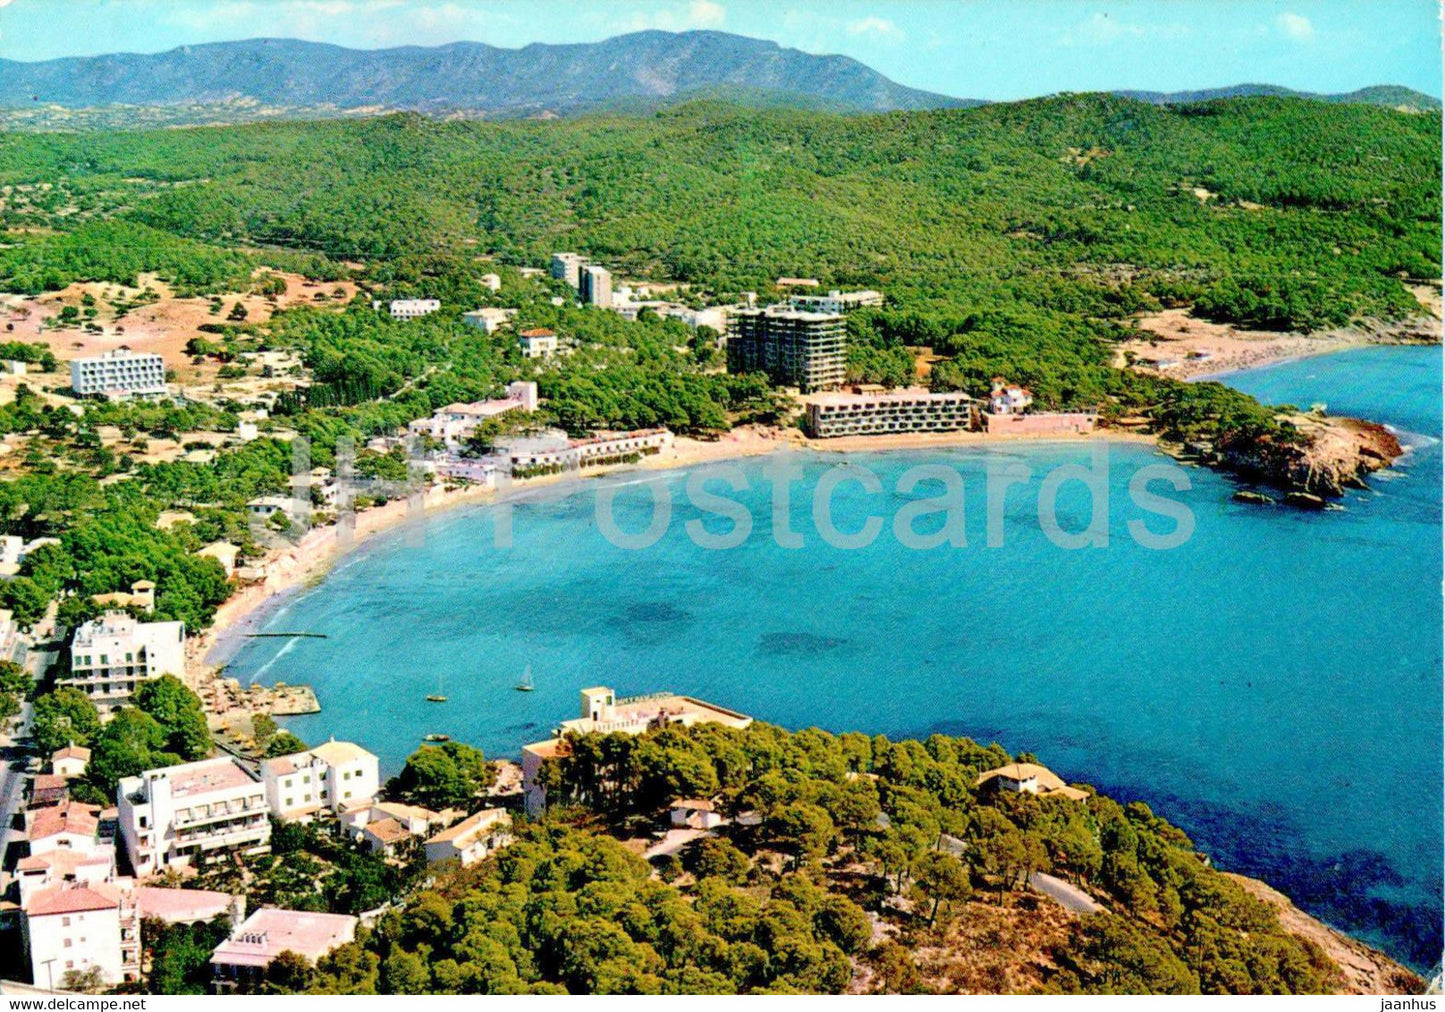 Paguera - Vista aerea de sus playas - Mallorca - 133 - Spain - used - JH Postcards